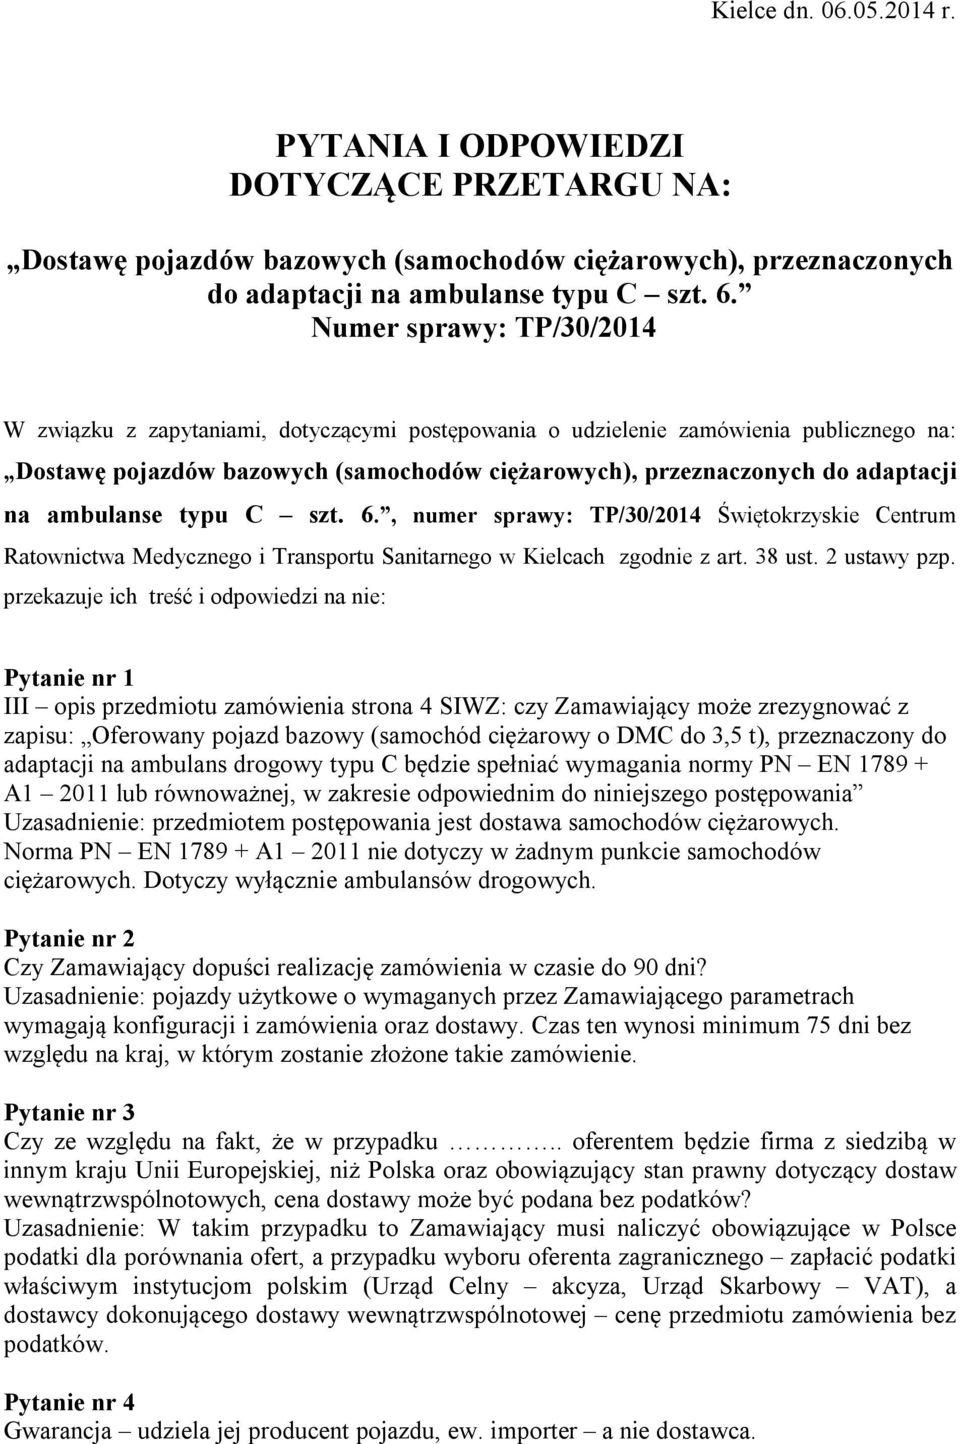 ambulanse typu C szt. 6., numer sprawy: TP/30/2014 Świętokrzyskie Centrum Ratownictwa Medycznego i Transportu Sanitarnego w Kielcach zgodnie z art. 38 ust. 2 ustawy pzp.